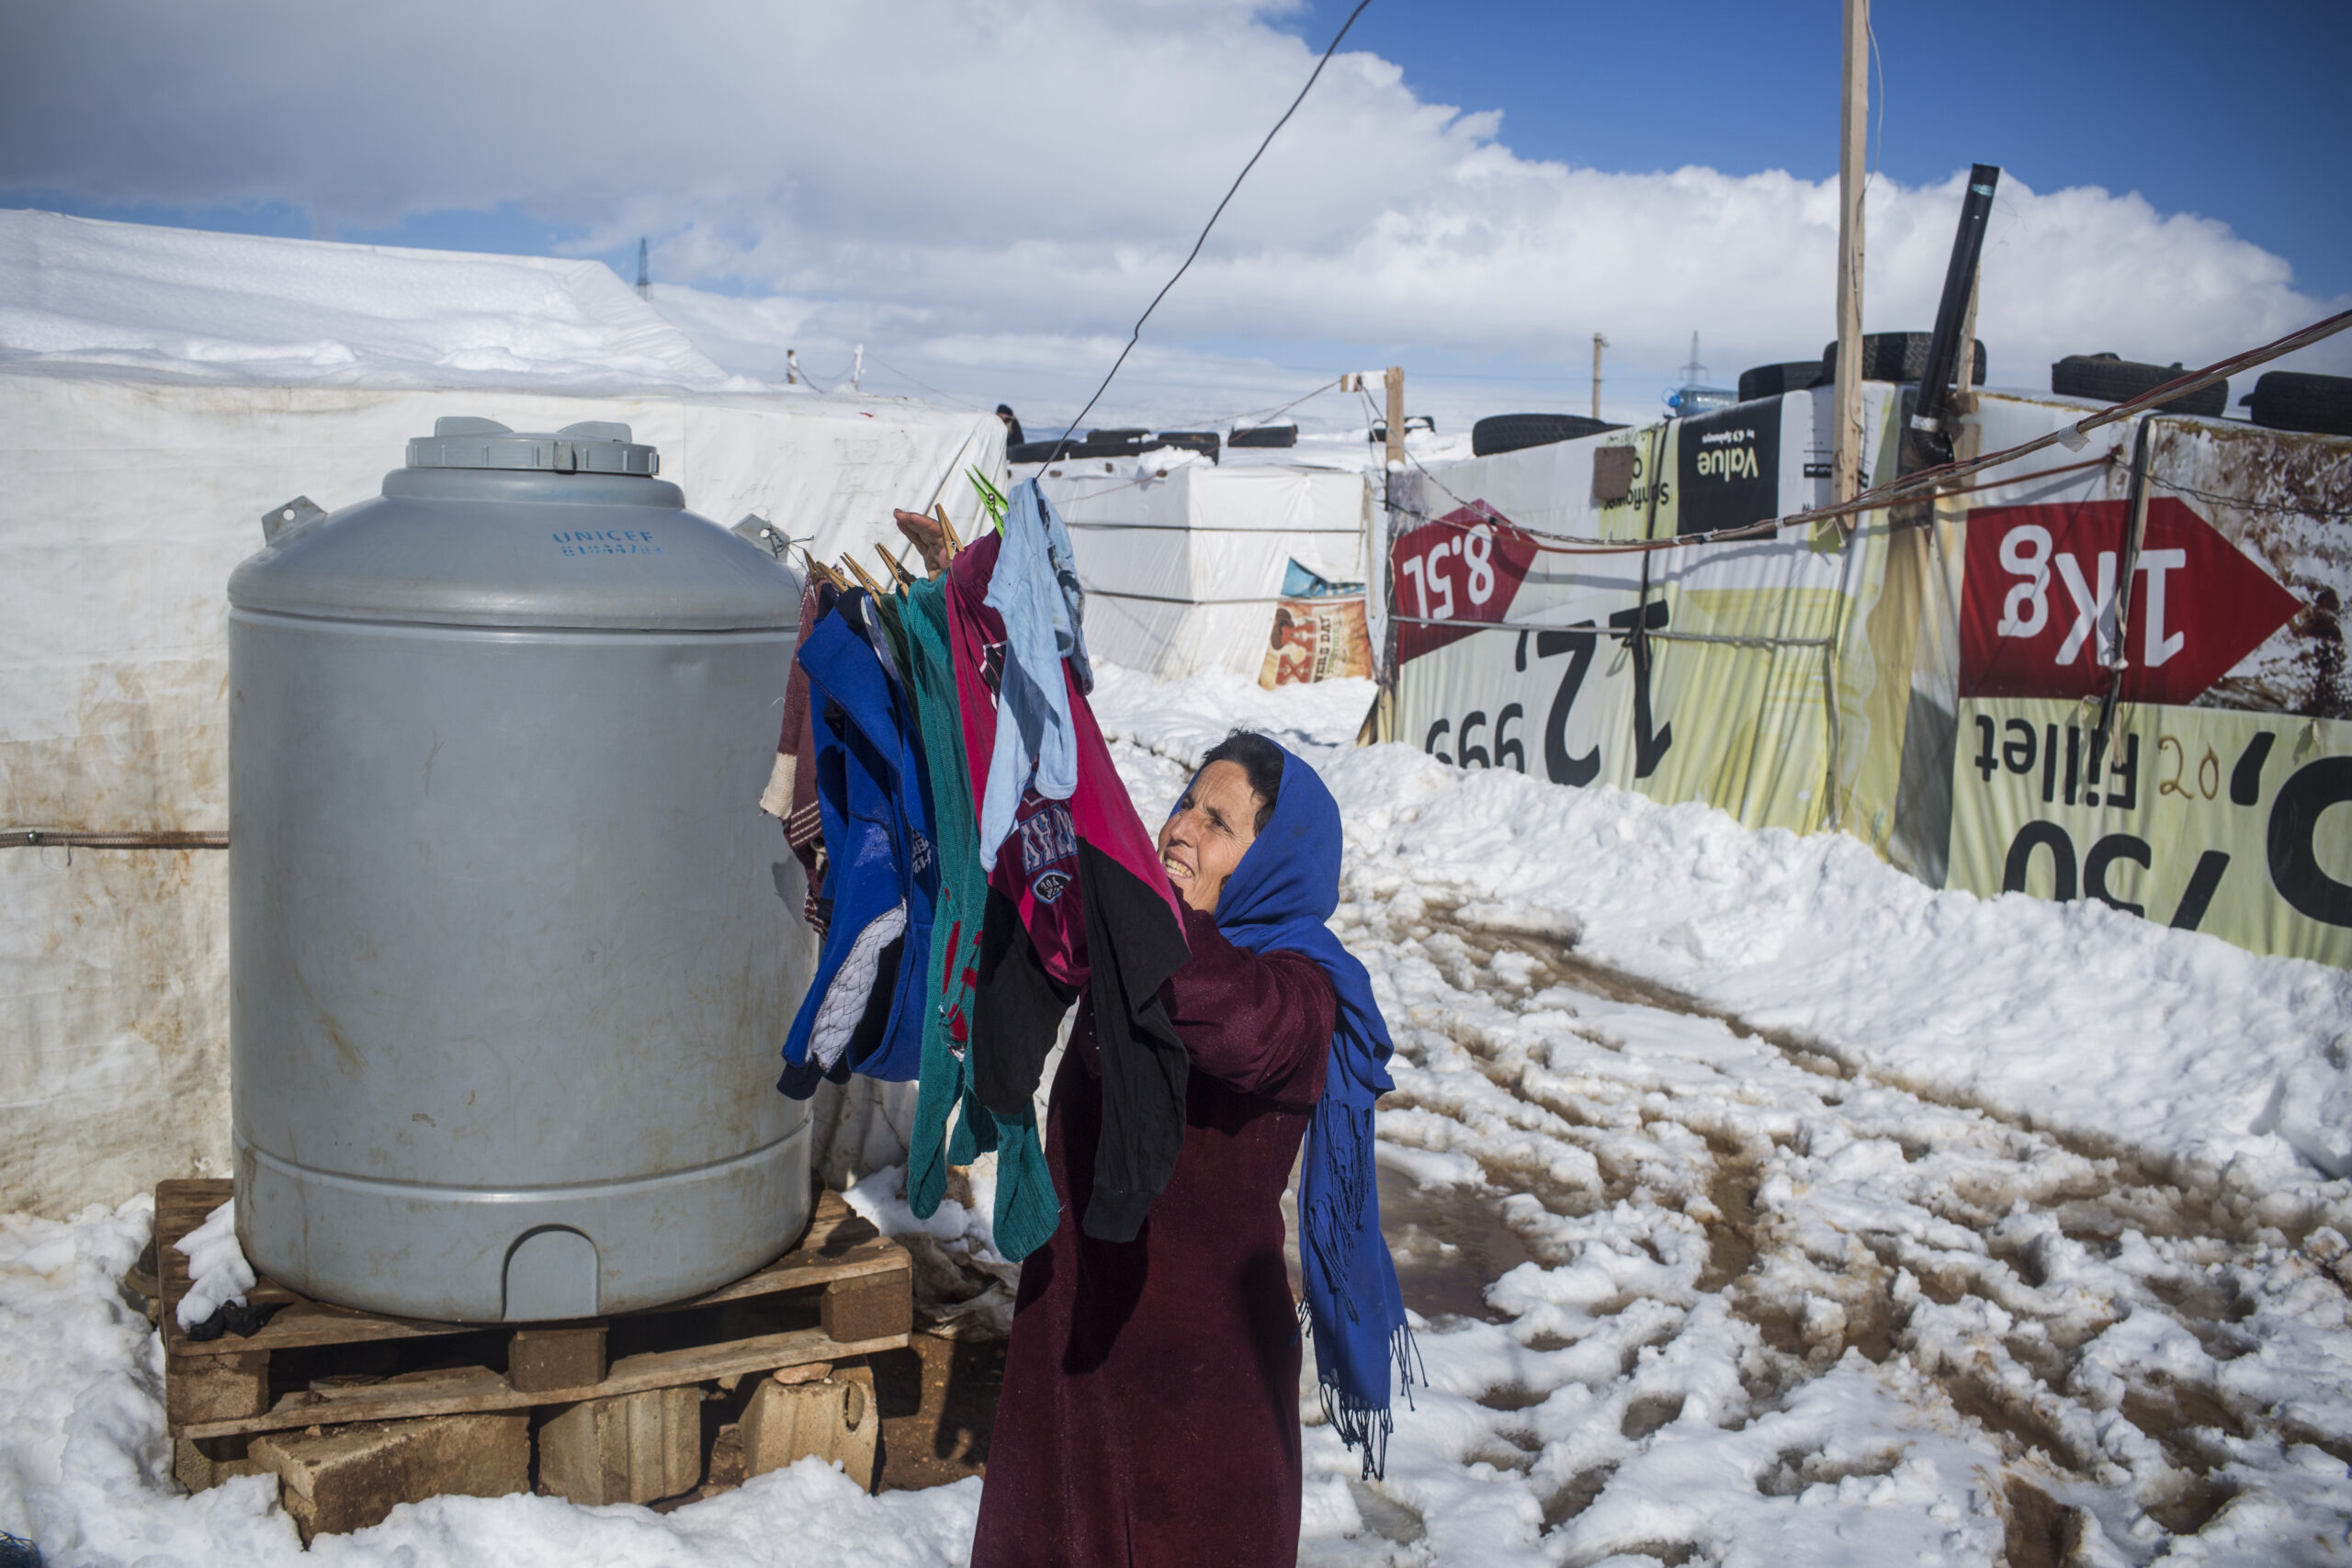 Ahdla, gevlucht uit Syrië, hangt de was op aan de waslijn in Doures waar zij en haar gezin verblijven. Het is haar zesde winter in Libanon. ©UNHCR/ Diego Ibarra Sánchez